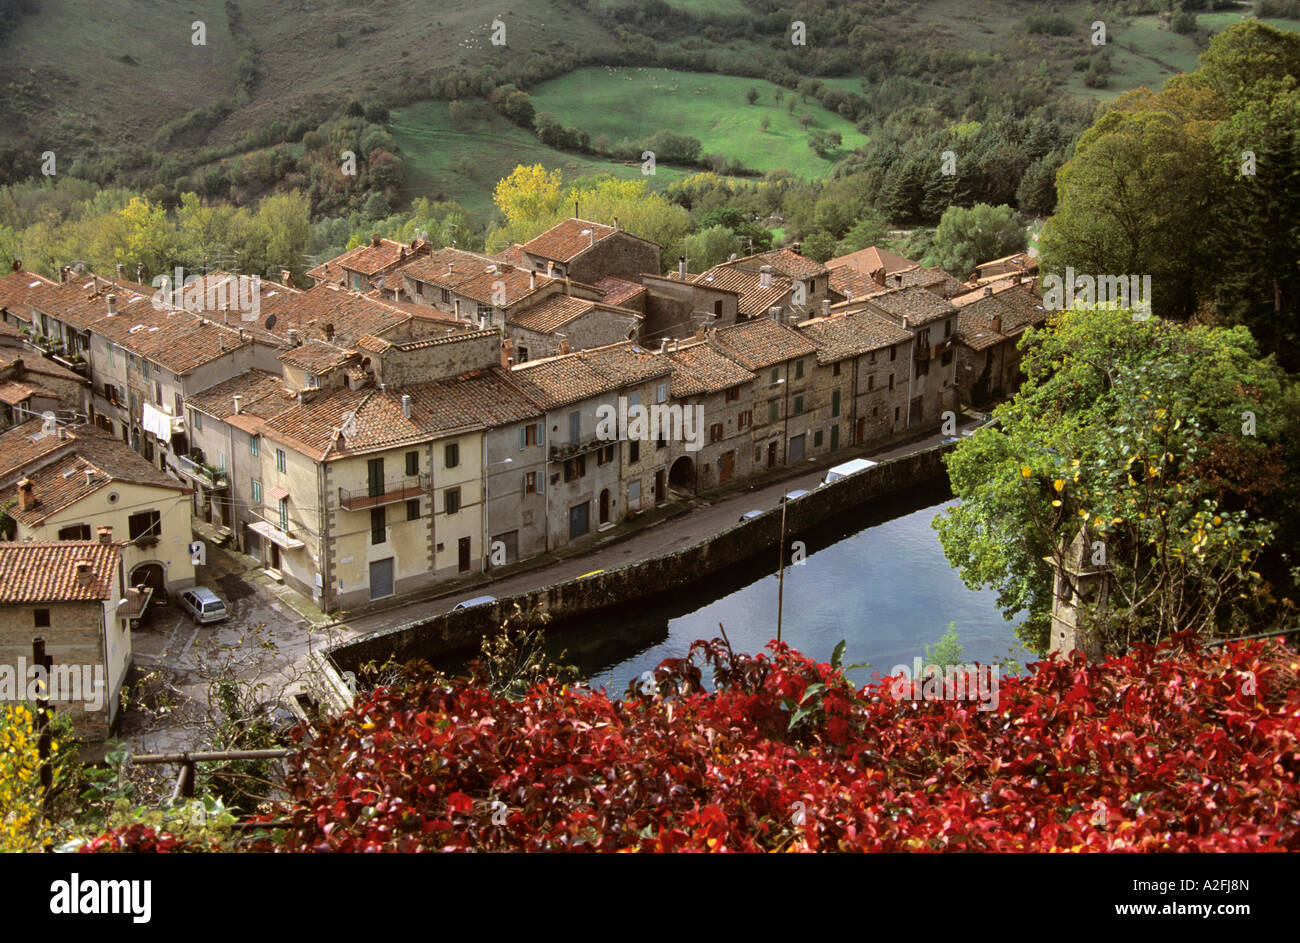 Italy, Tuscany, view to Santa Fiora Stock Photo